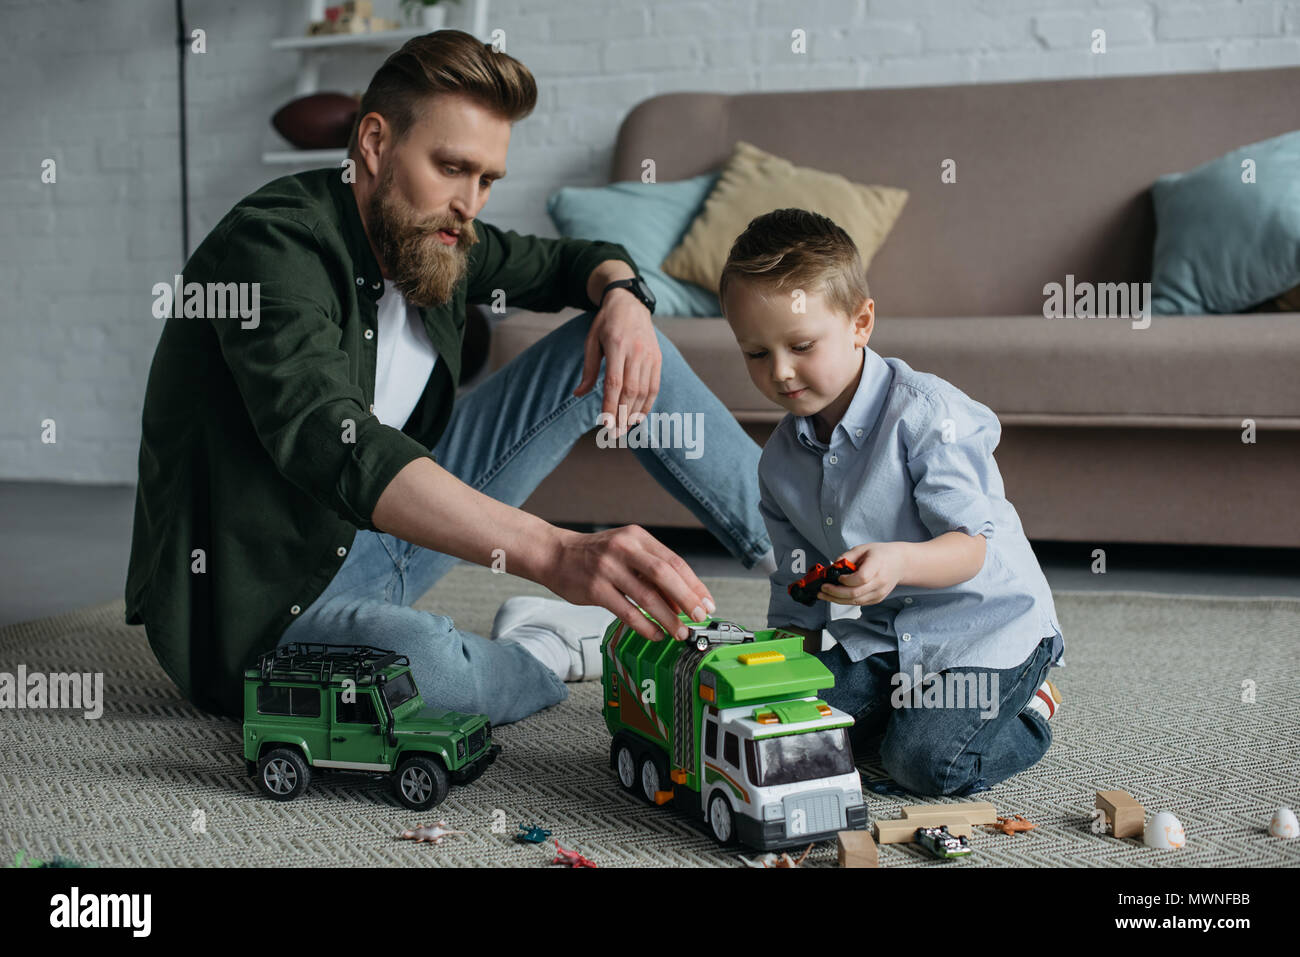 Папа играет машинками. Папа и малыш играют в машинки. Взрослые играют в игрушки. Мальчик играется в машинки. Игры в машинки с папами.